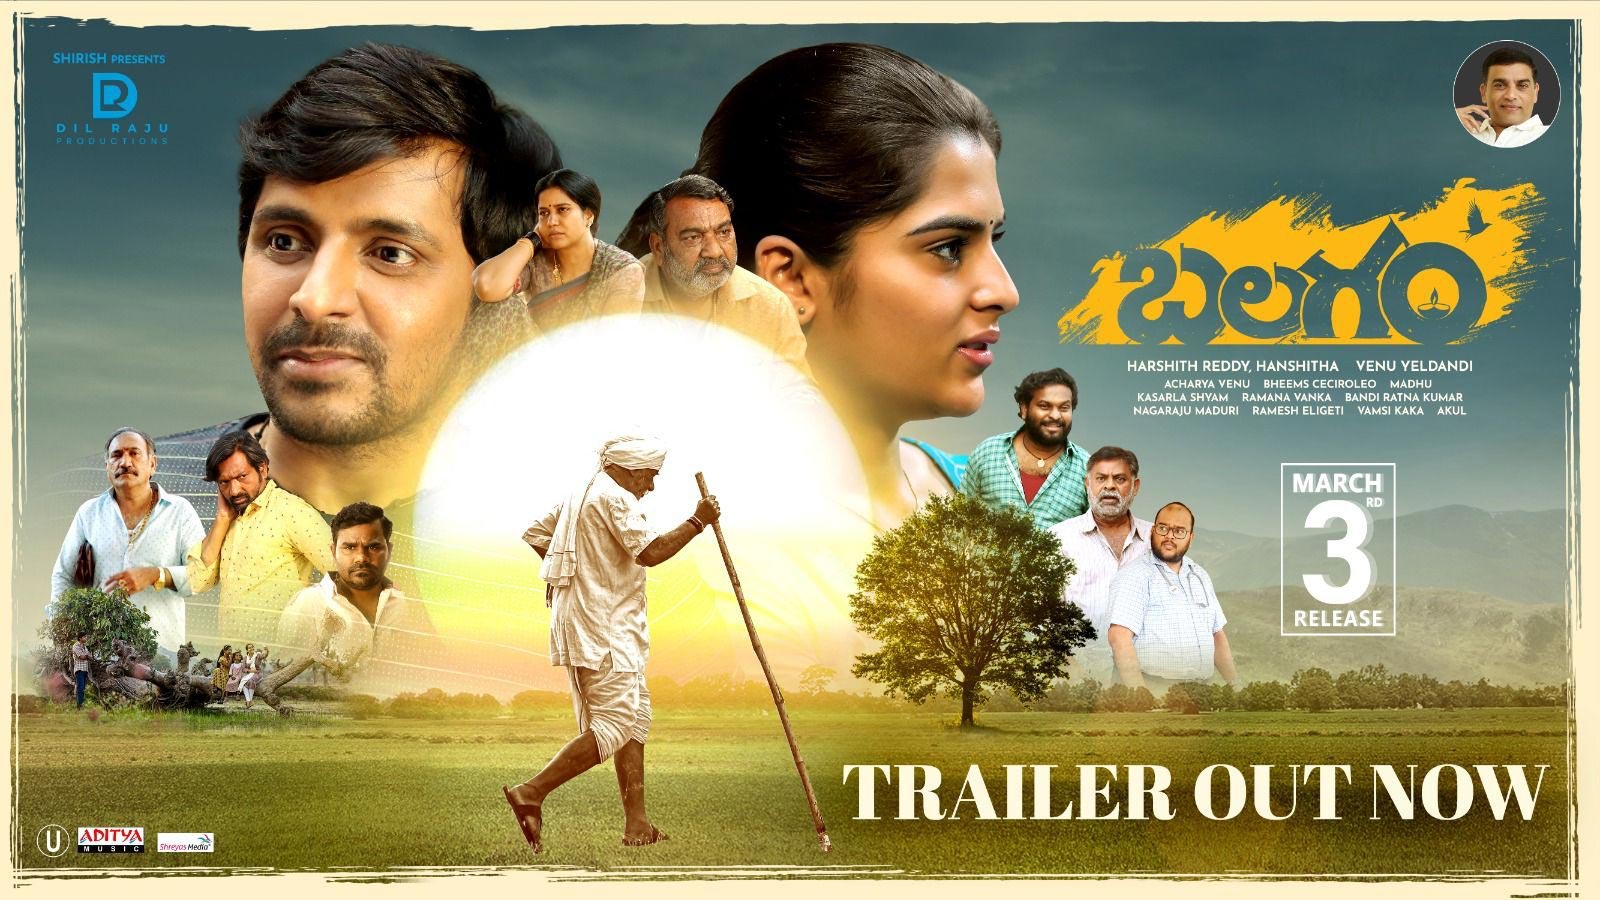 Balagam trailer review